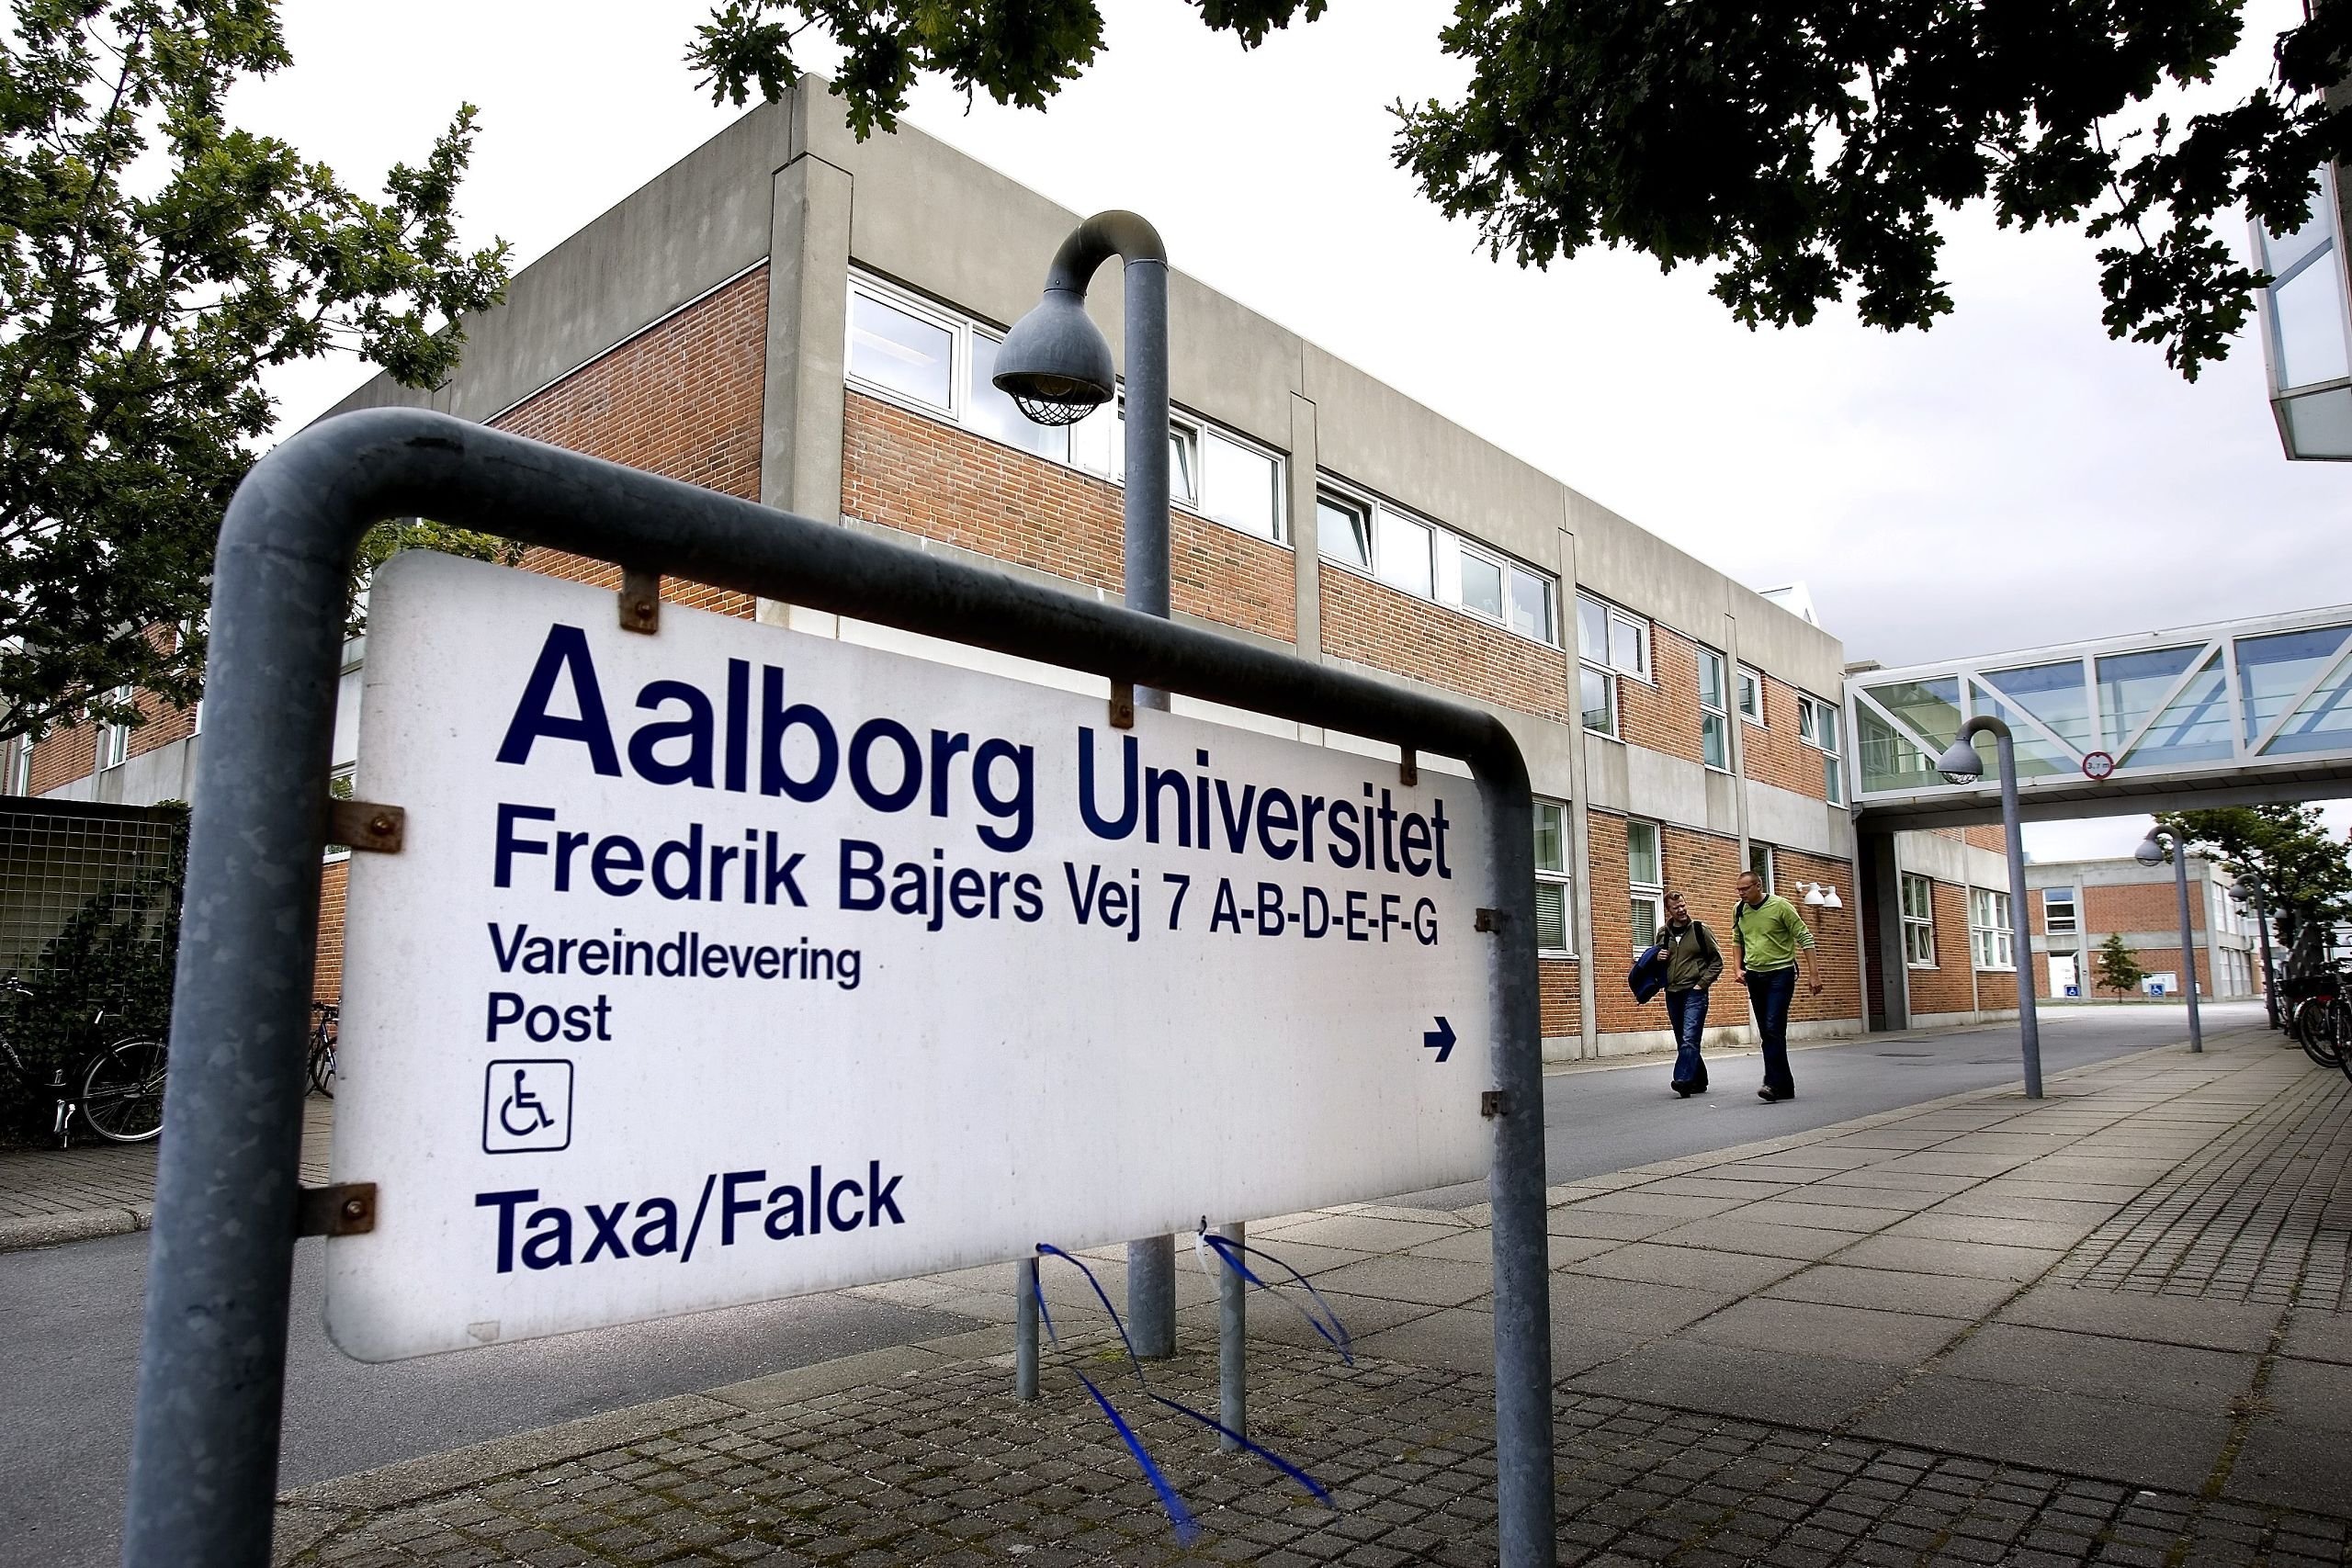 Efter mistanke om cyberkriminalitet: Aalborg Universitet regner først med systemadgang torsdag